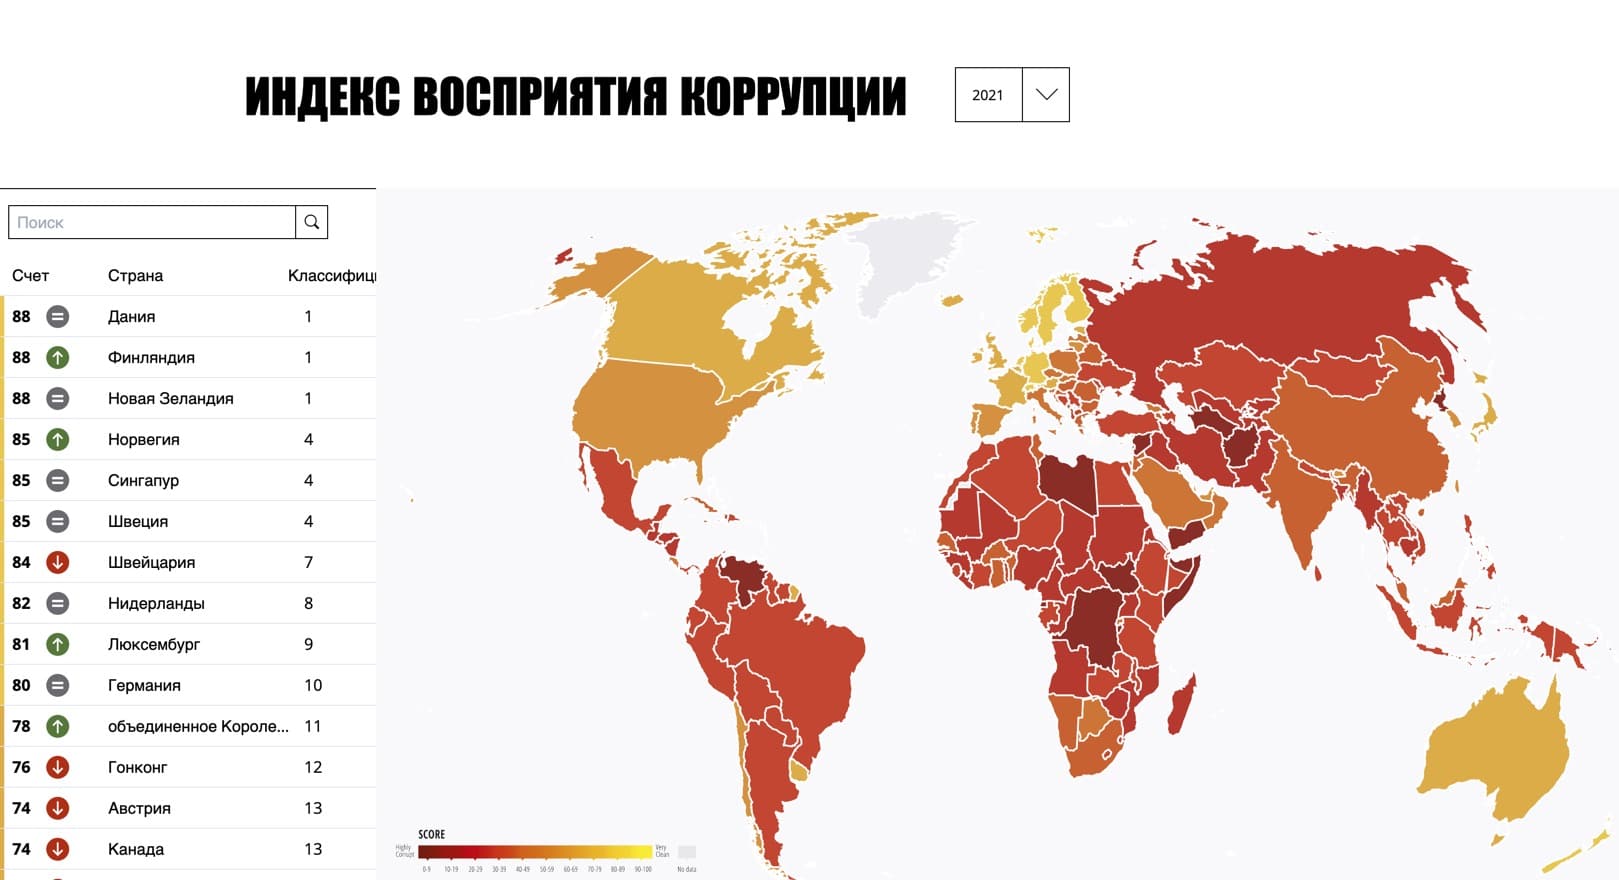 Индекс восприятия коррупции впервые опубликовали в 1995 году. Он составляется ежегодно для 180 стран. (2021, Transparency International, CC-BY-ND 4.0)